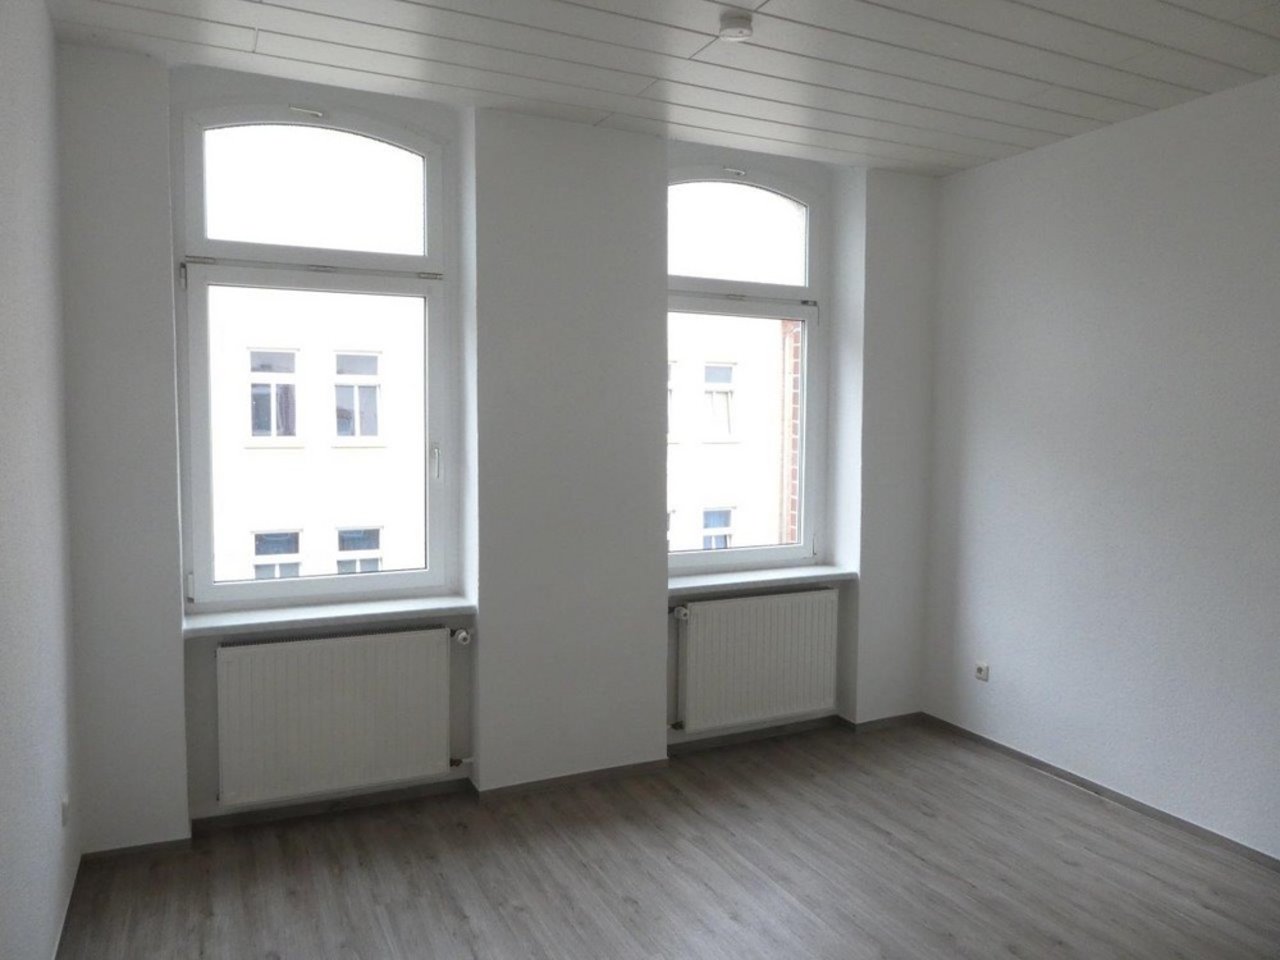 Freundliche, bezugsfertige 2-Zimmerwohnung in Arnstadt-Schlafzimmer